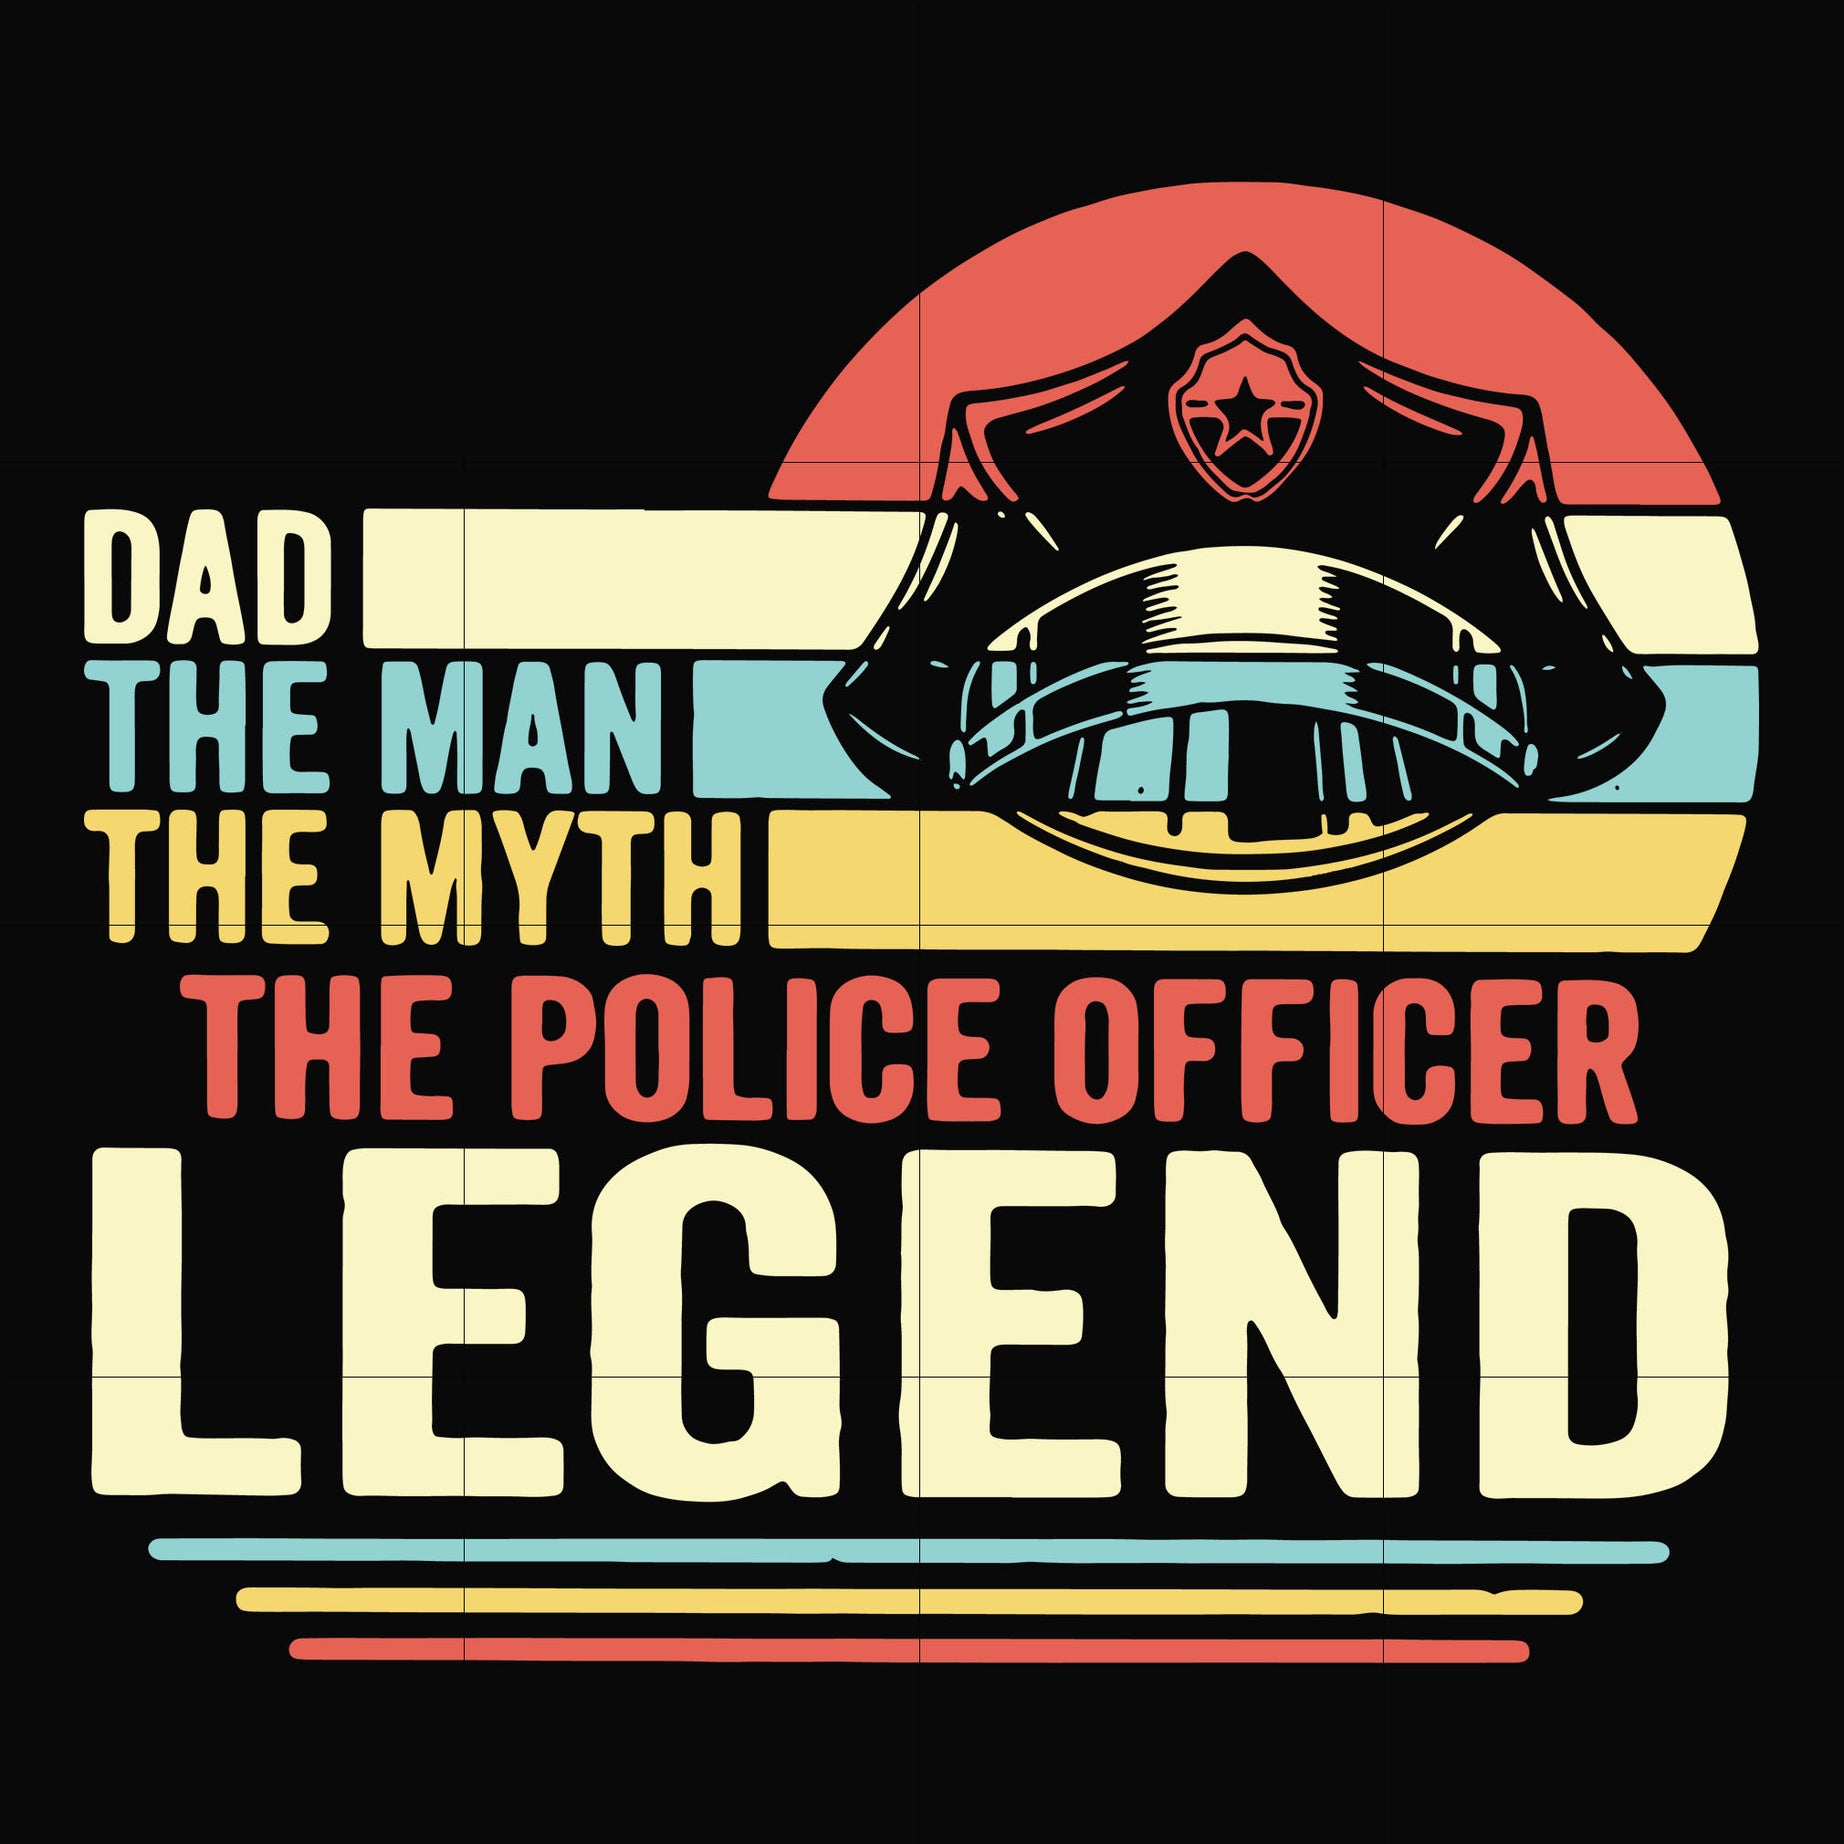 Dad the man the myth the police officer legend svg, png, dxf, eps, digital file FTD37